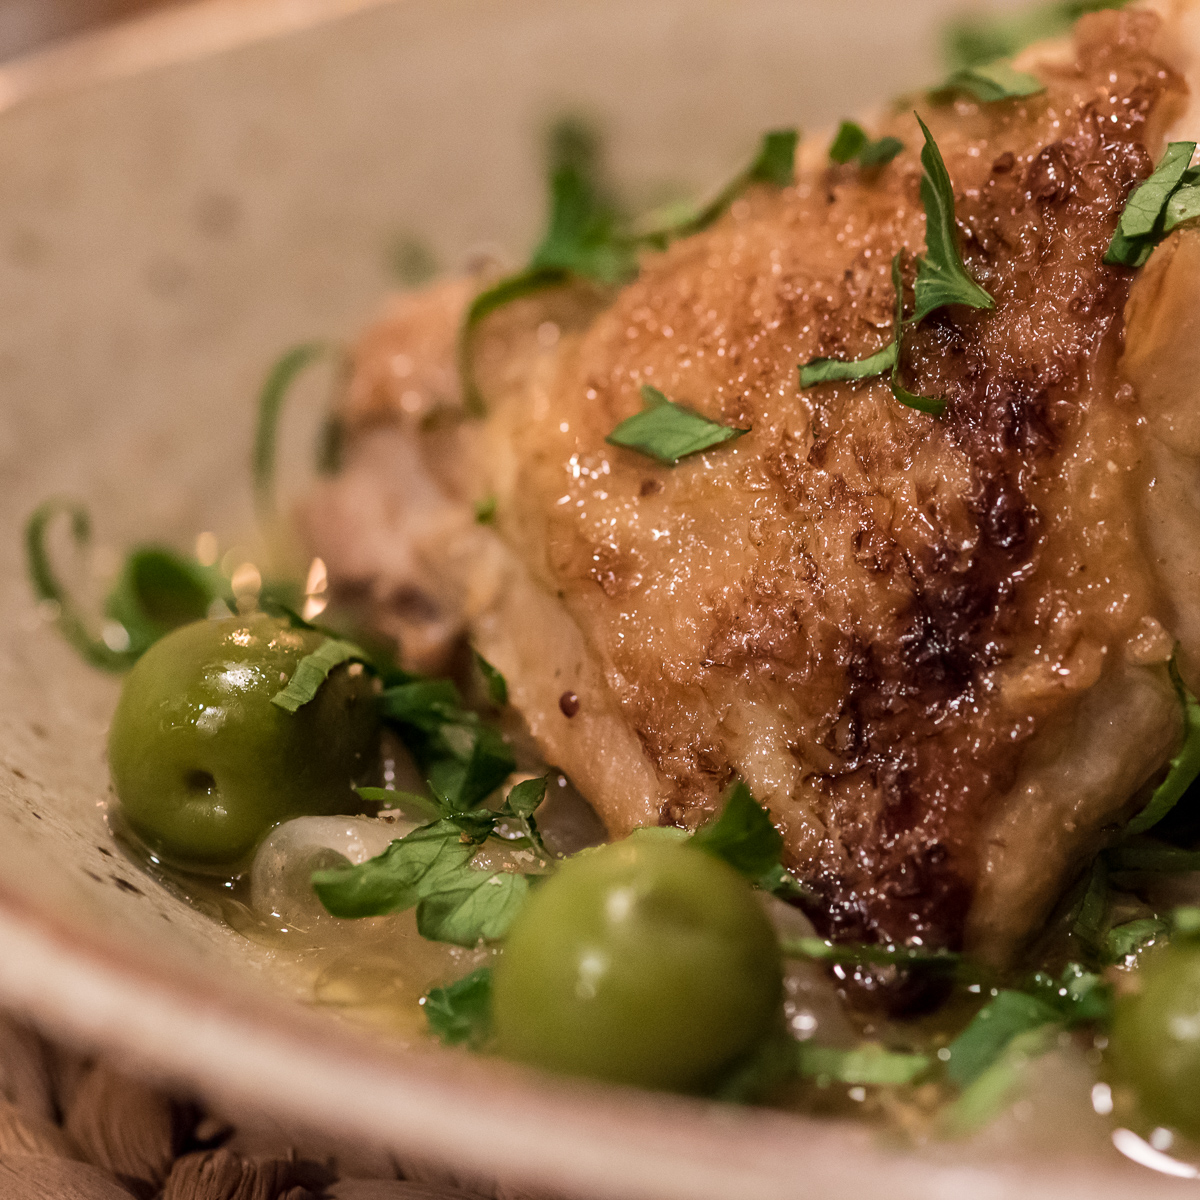 Sherry Huhn mit Oliven aus dem Schnellkochtopf selber machen